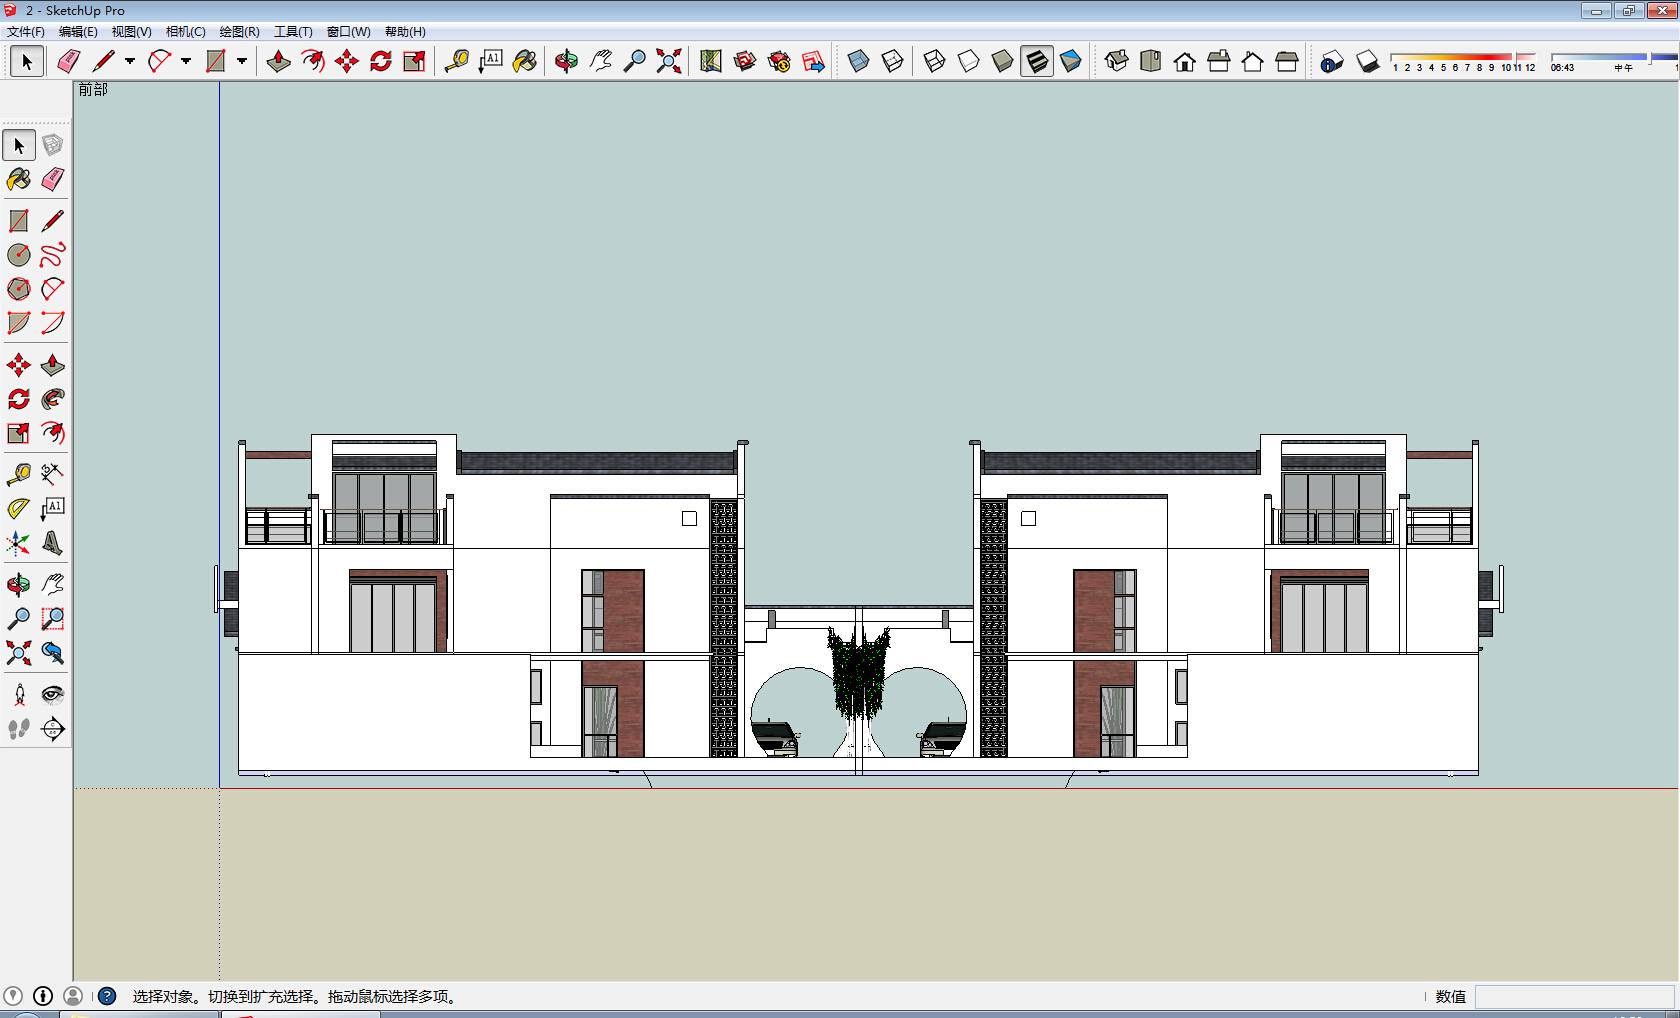 新中式 独栋别墅sketchup模型下载-编号374138 SketchUp建筑模型下载 第1张